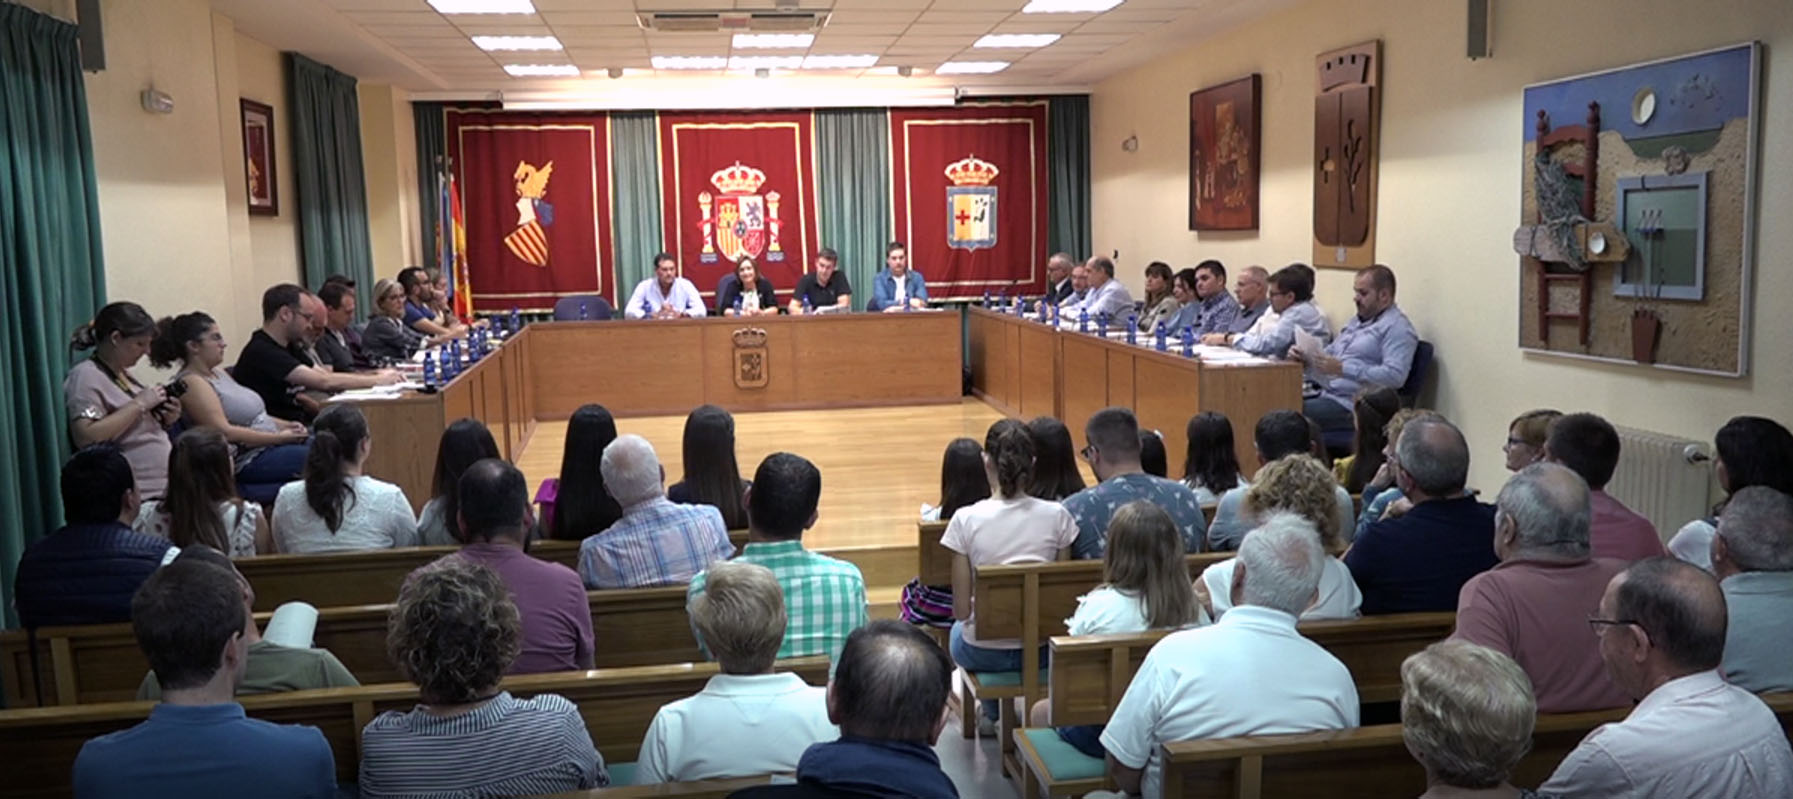 Benicarló, el 9 de novembre se celebrarà el primer Ple sobre l'Estat del Municipi